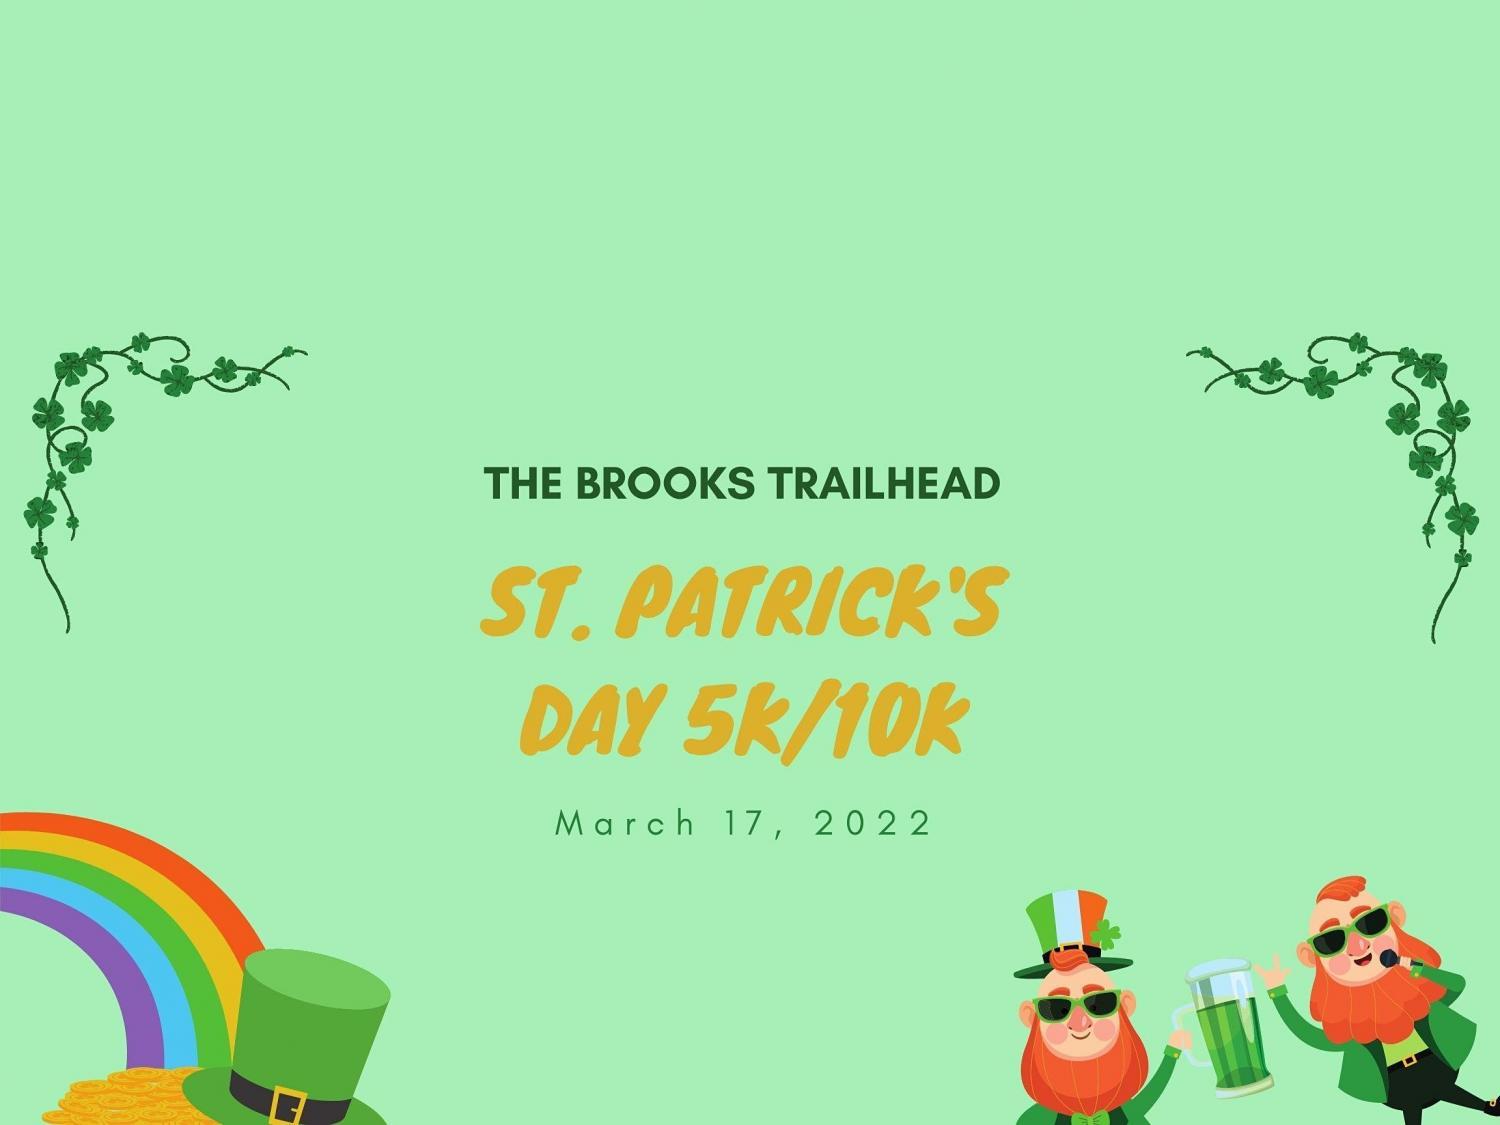 St. Patrick's Day 5k/10k